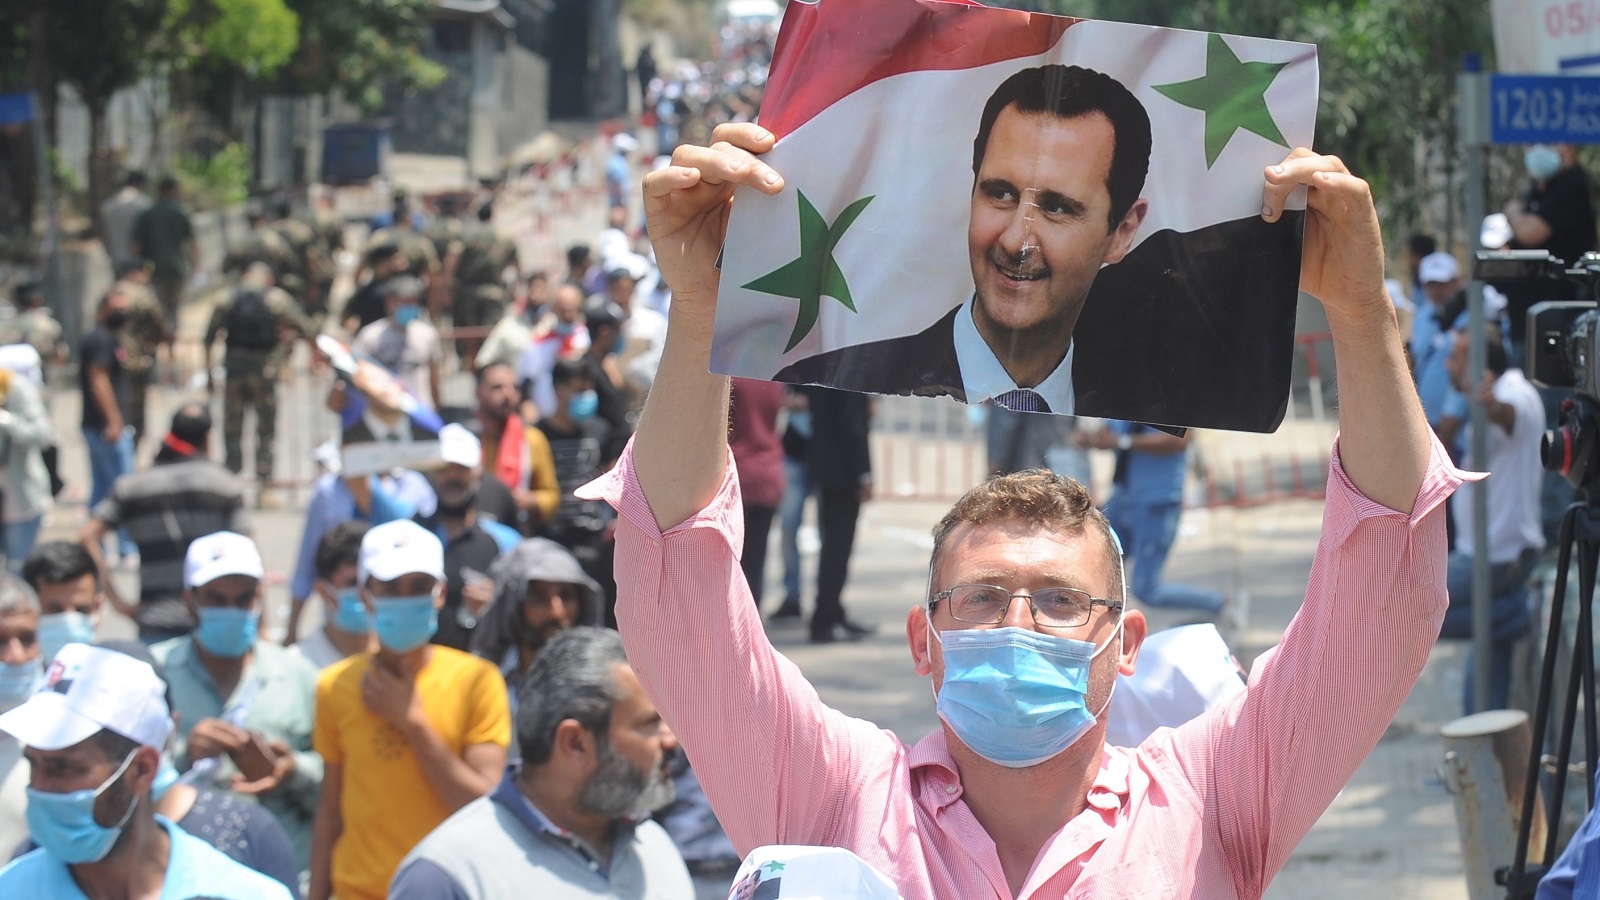 سيناريو وهمي لإعادة نفوذ الأسد إلى لبنان